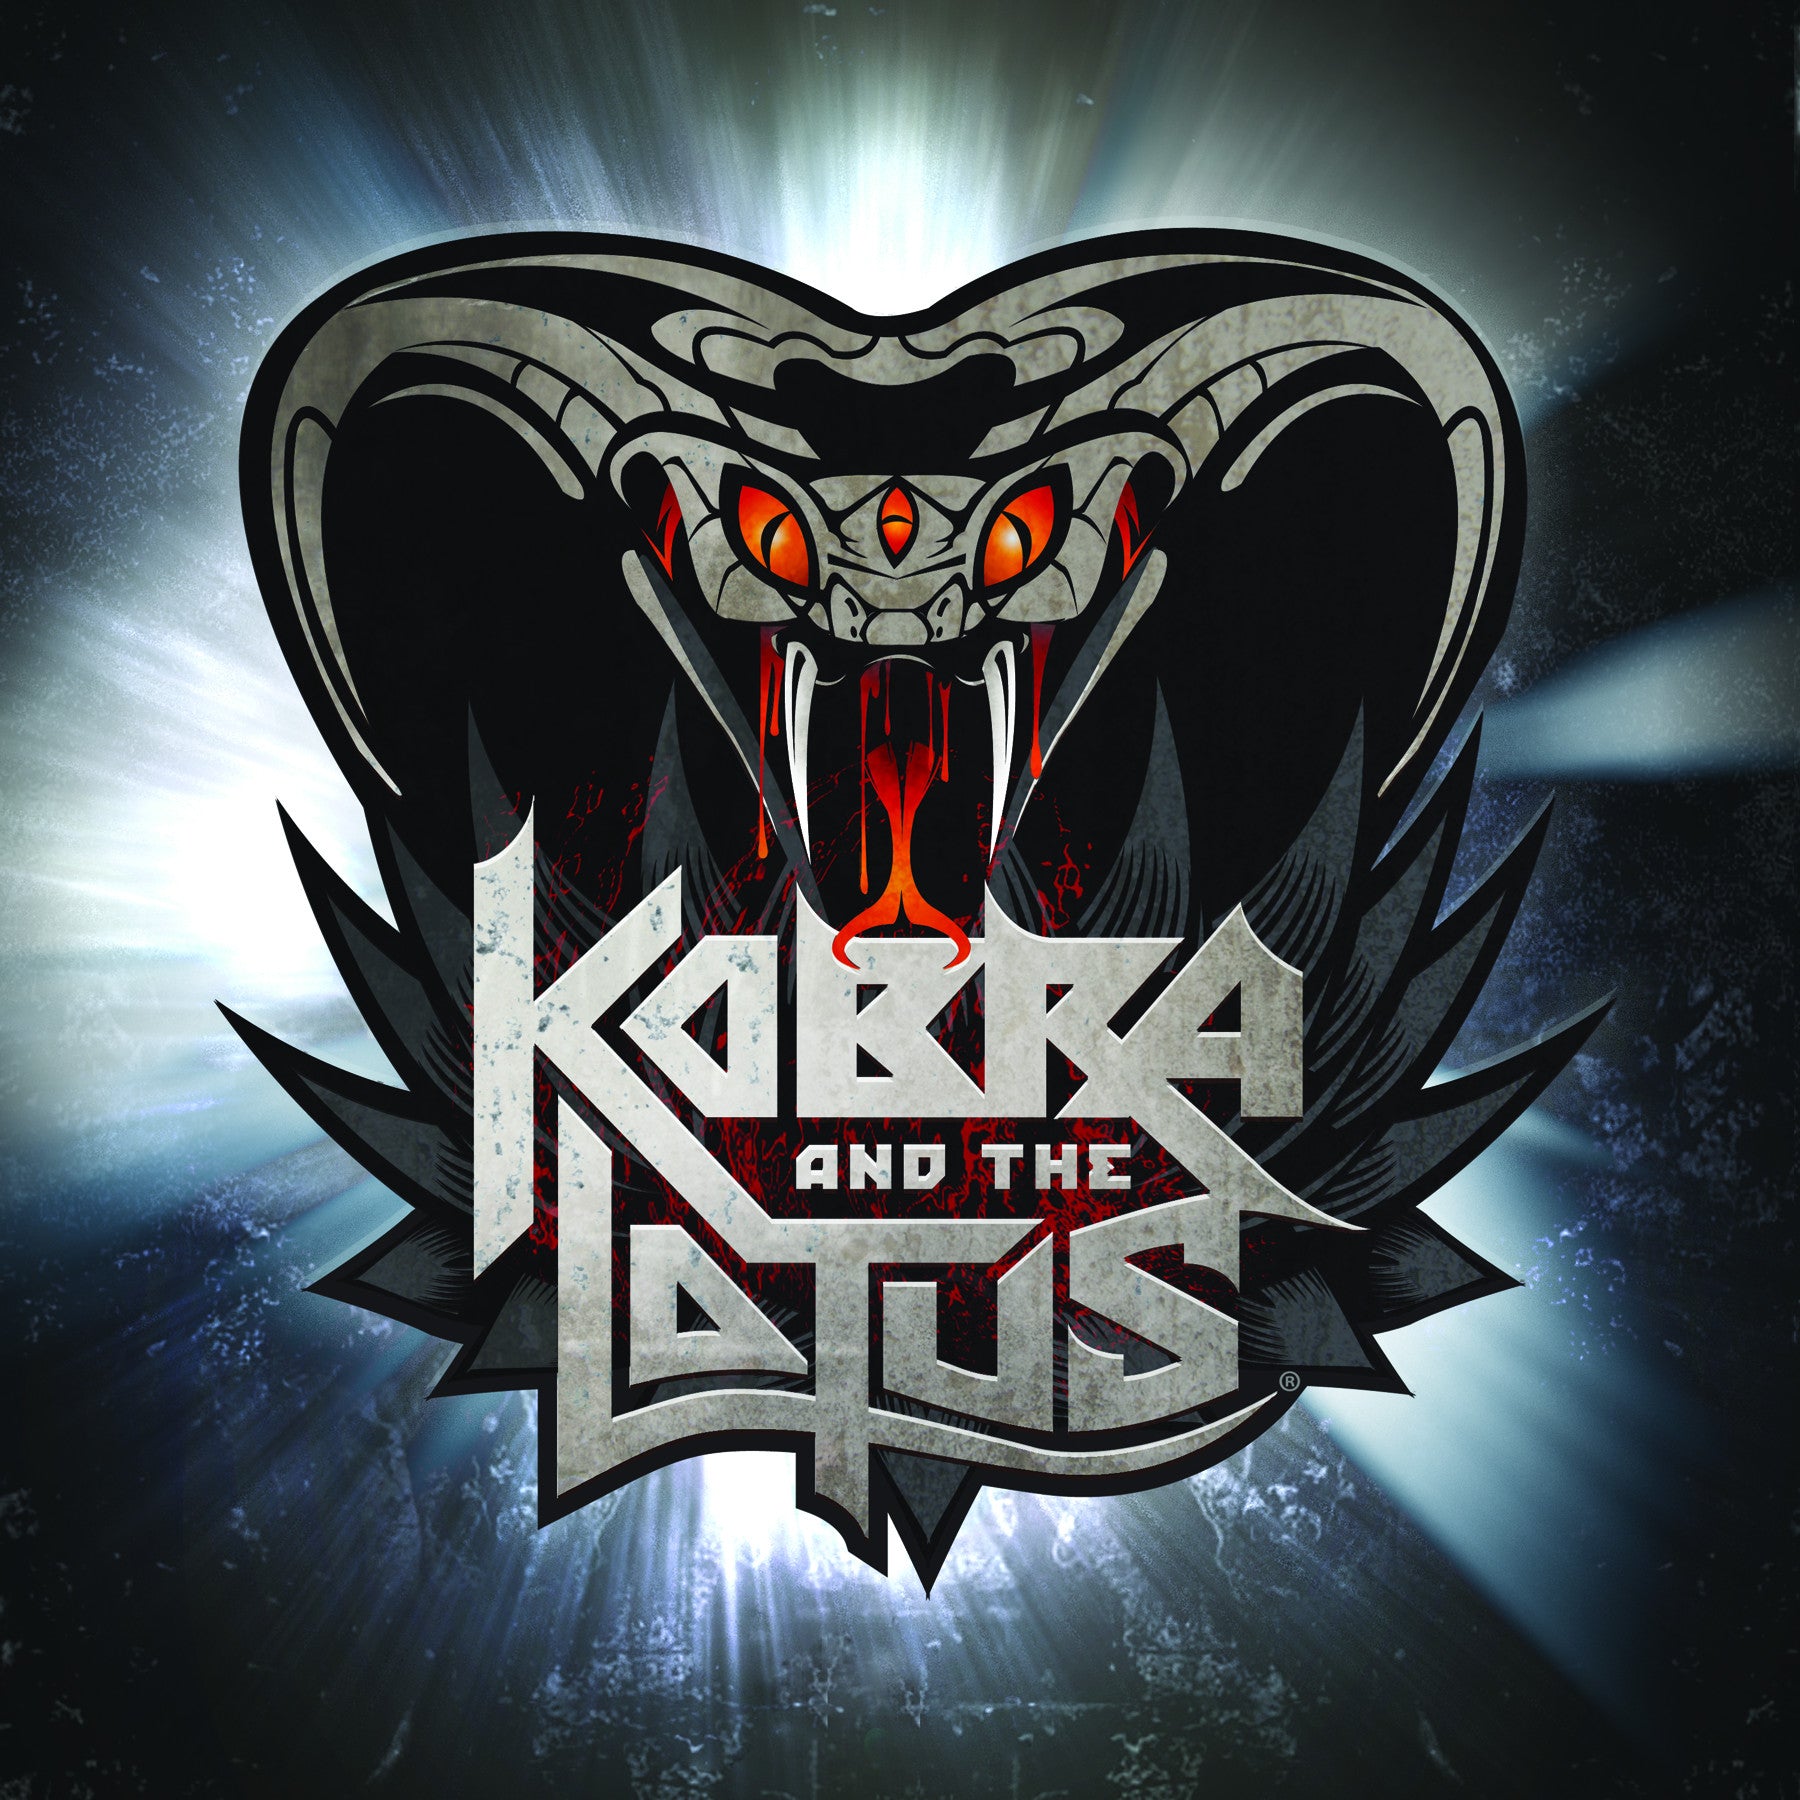 Limited Edition KOBRA AND THE LOTUS CD 2012 Release Autographed  by Kobra Paige and Jasio Kulakowski